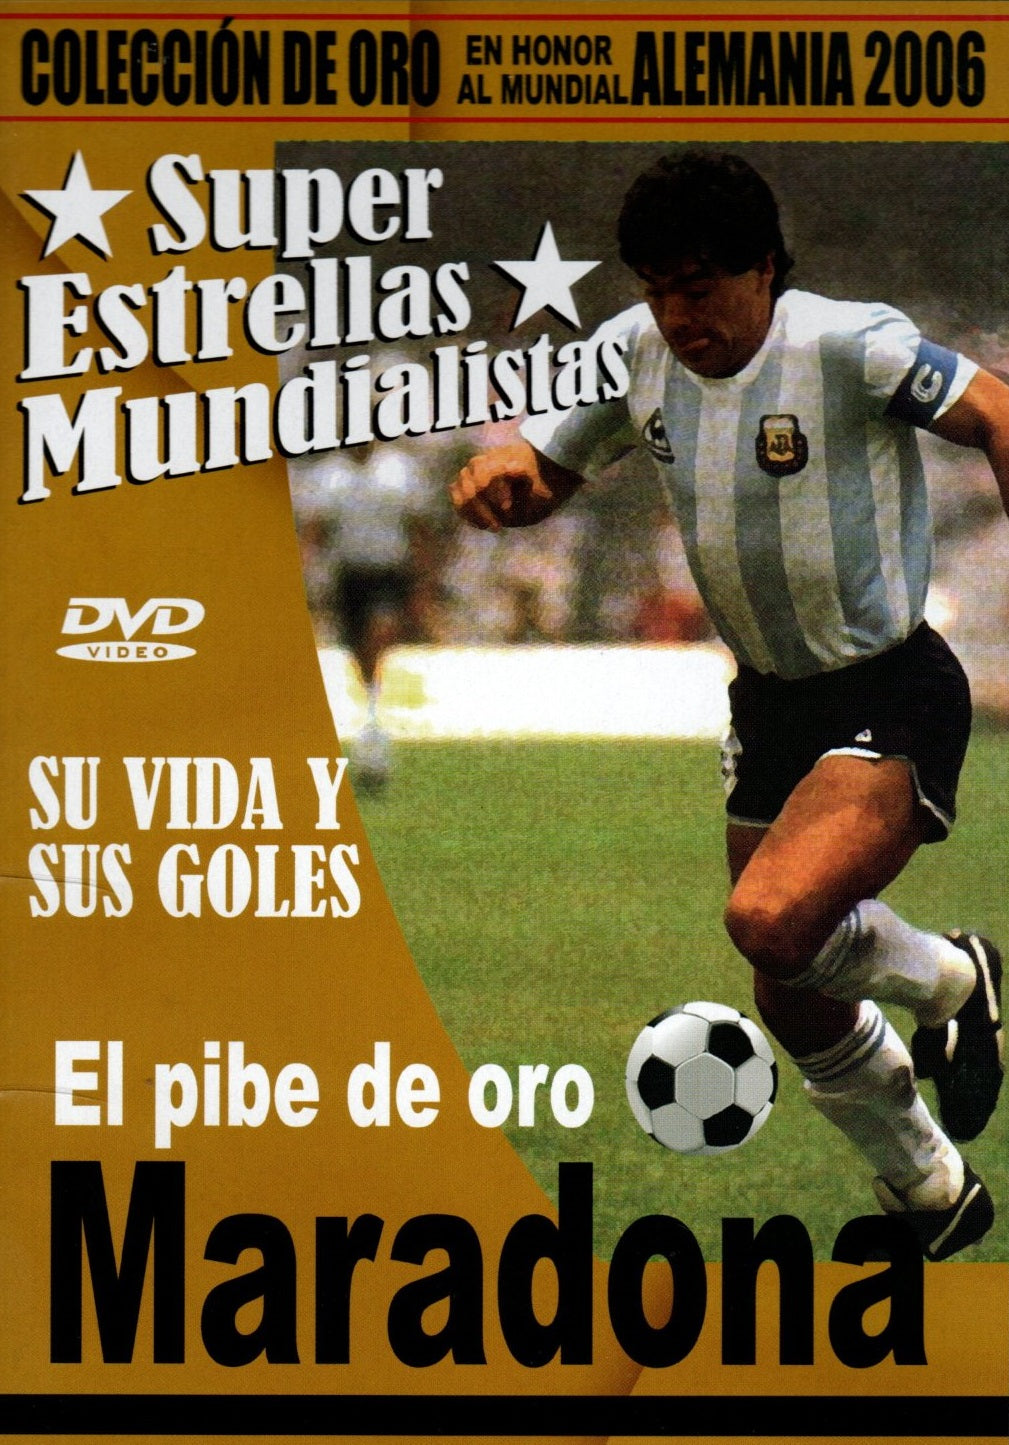 DVD Maradona - Super estrellas mundialistas colección de oro Alemania 2006